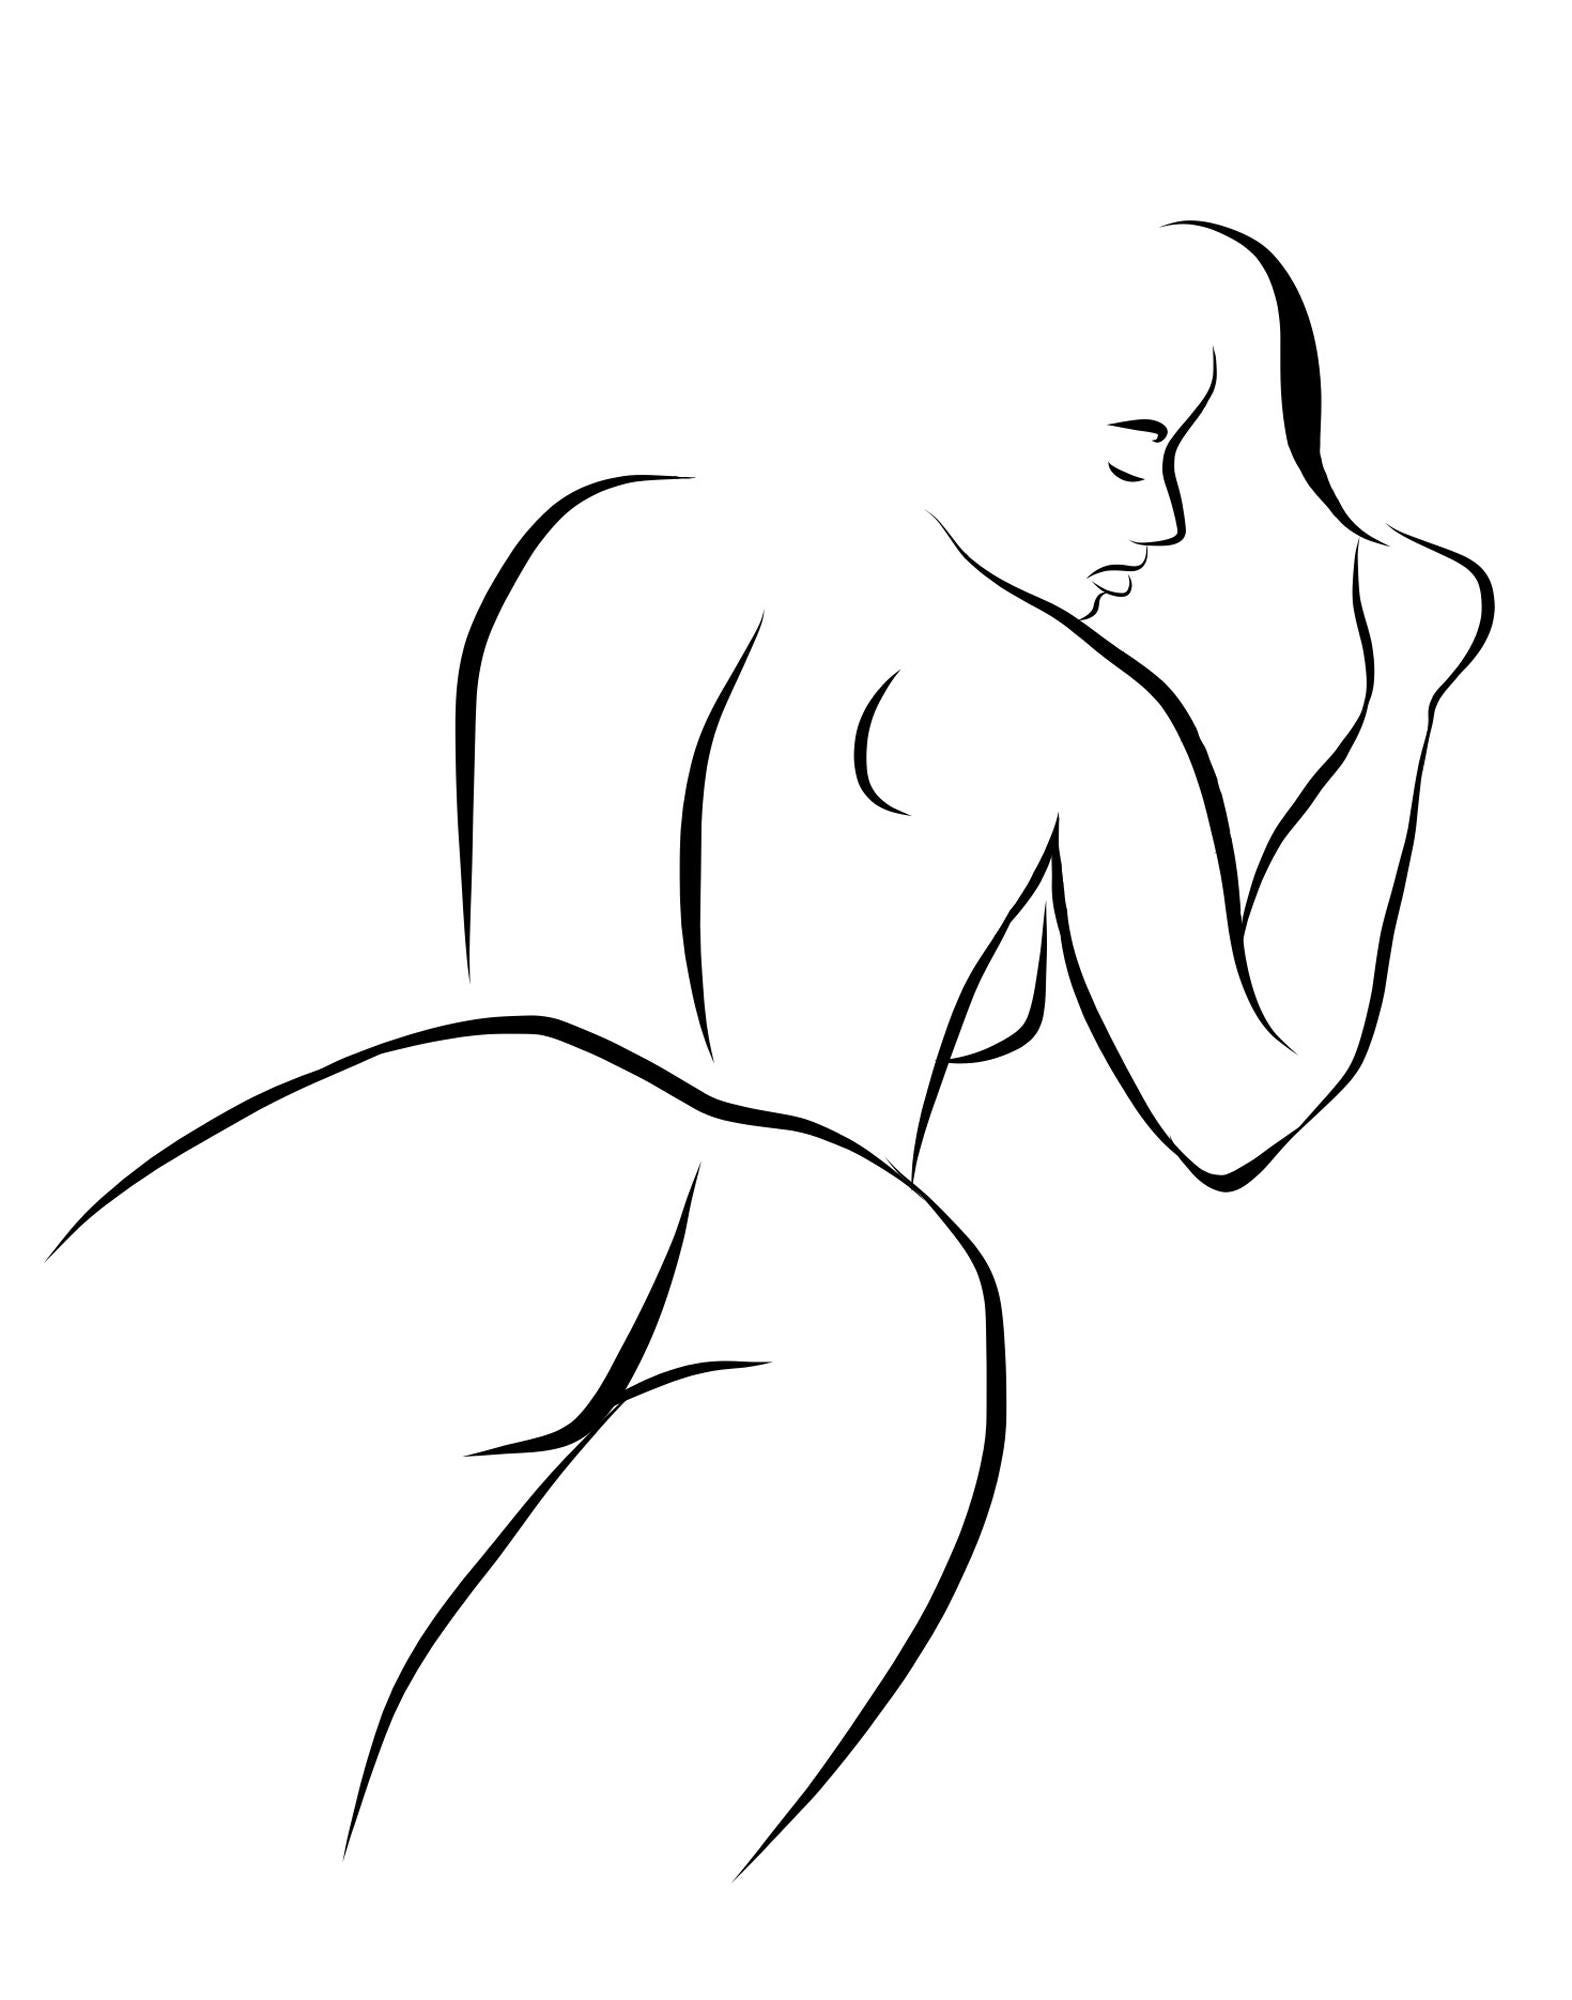 Haiku n°10   - Dessin vectoriel numérique N&B Femme couchée Femme nue Figure